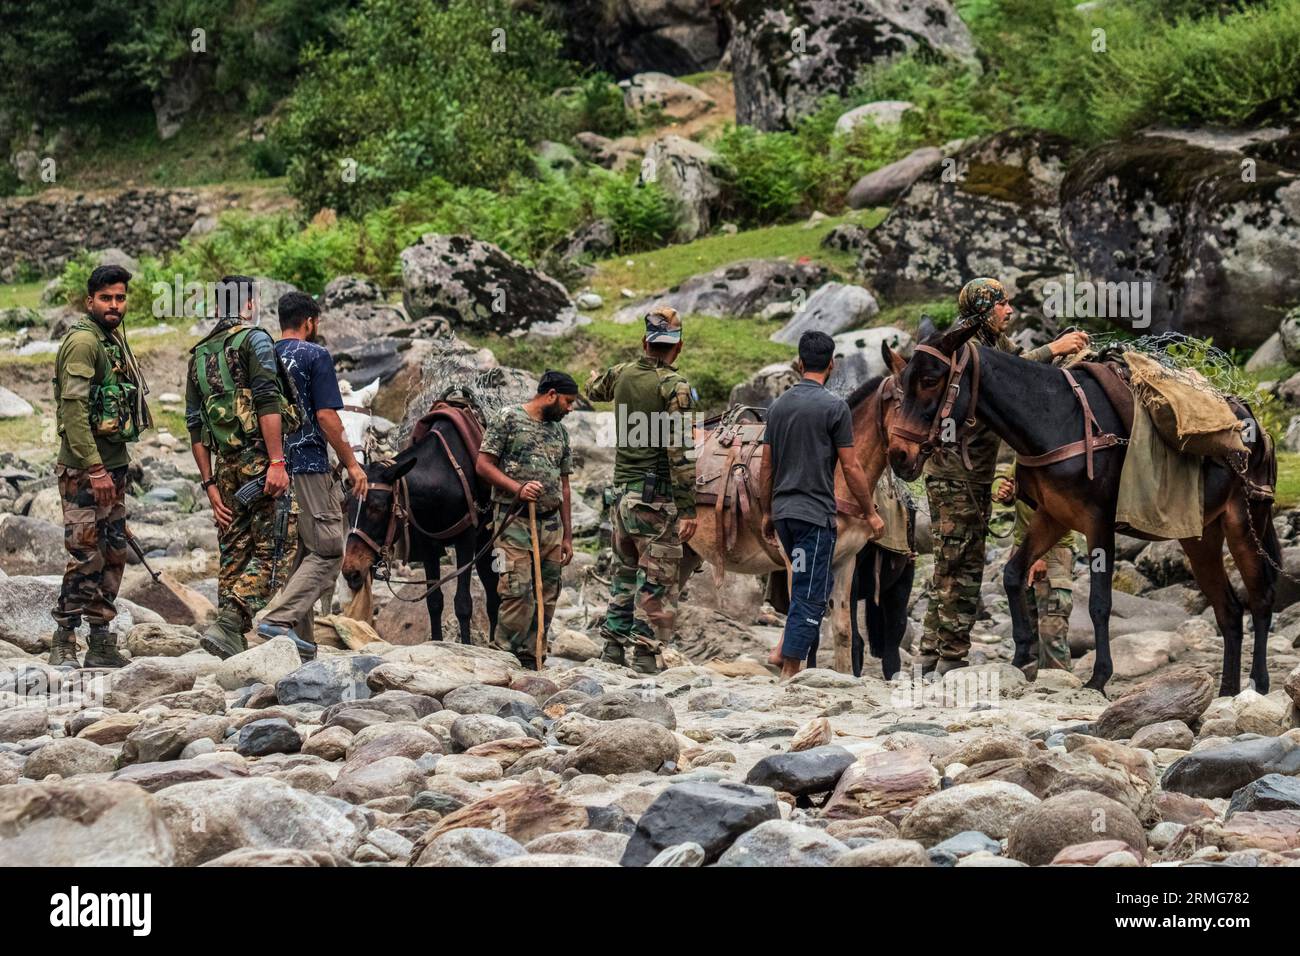 Soldati dell'esercito indiano visti con i loro cavalli mentre si preparano a dirigersi verso i loro bunker, al fiume Neelam o Kishan Ganga che ha diviso il Kashmir in due parti controllate dai rivali nucleari India e Pakistan. Il fiume funge da linea di controllo contesa e scorre attraverso un villaggio chiamato Keran da entrambi i lati che si trova sul lato settentrionale del distretto di confine del Kashmir indiano Kupwara a circa 150 km da Srinagar e 93 km da Muzaffarabad, nel lato pakistano del Kashmir. (Foto di Faisal Bashir/SOPA Images/Sipa USA) Foto Stock